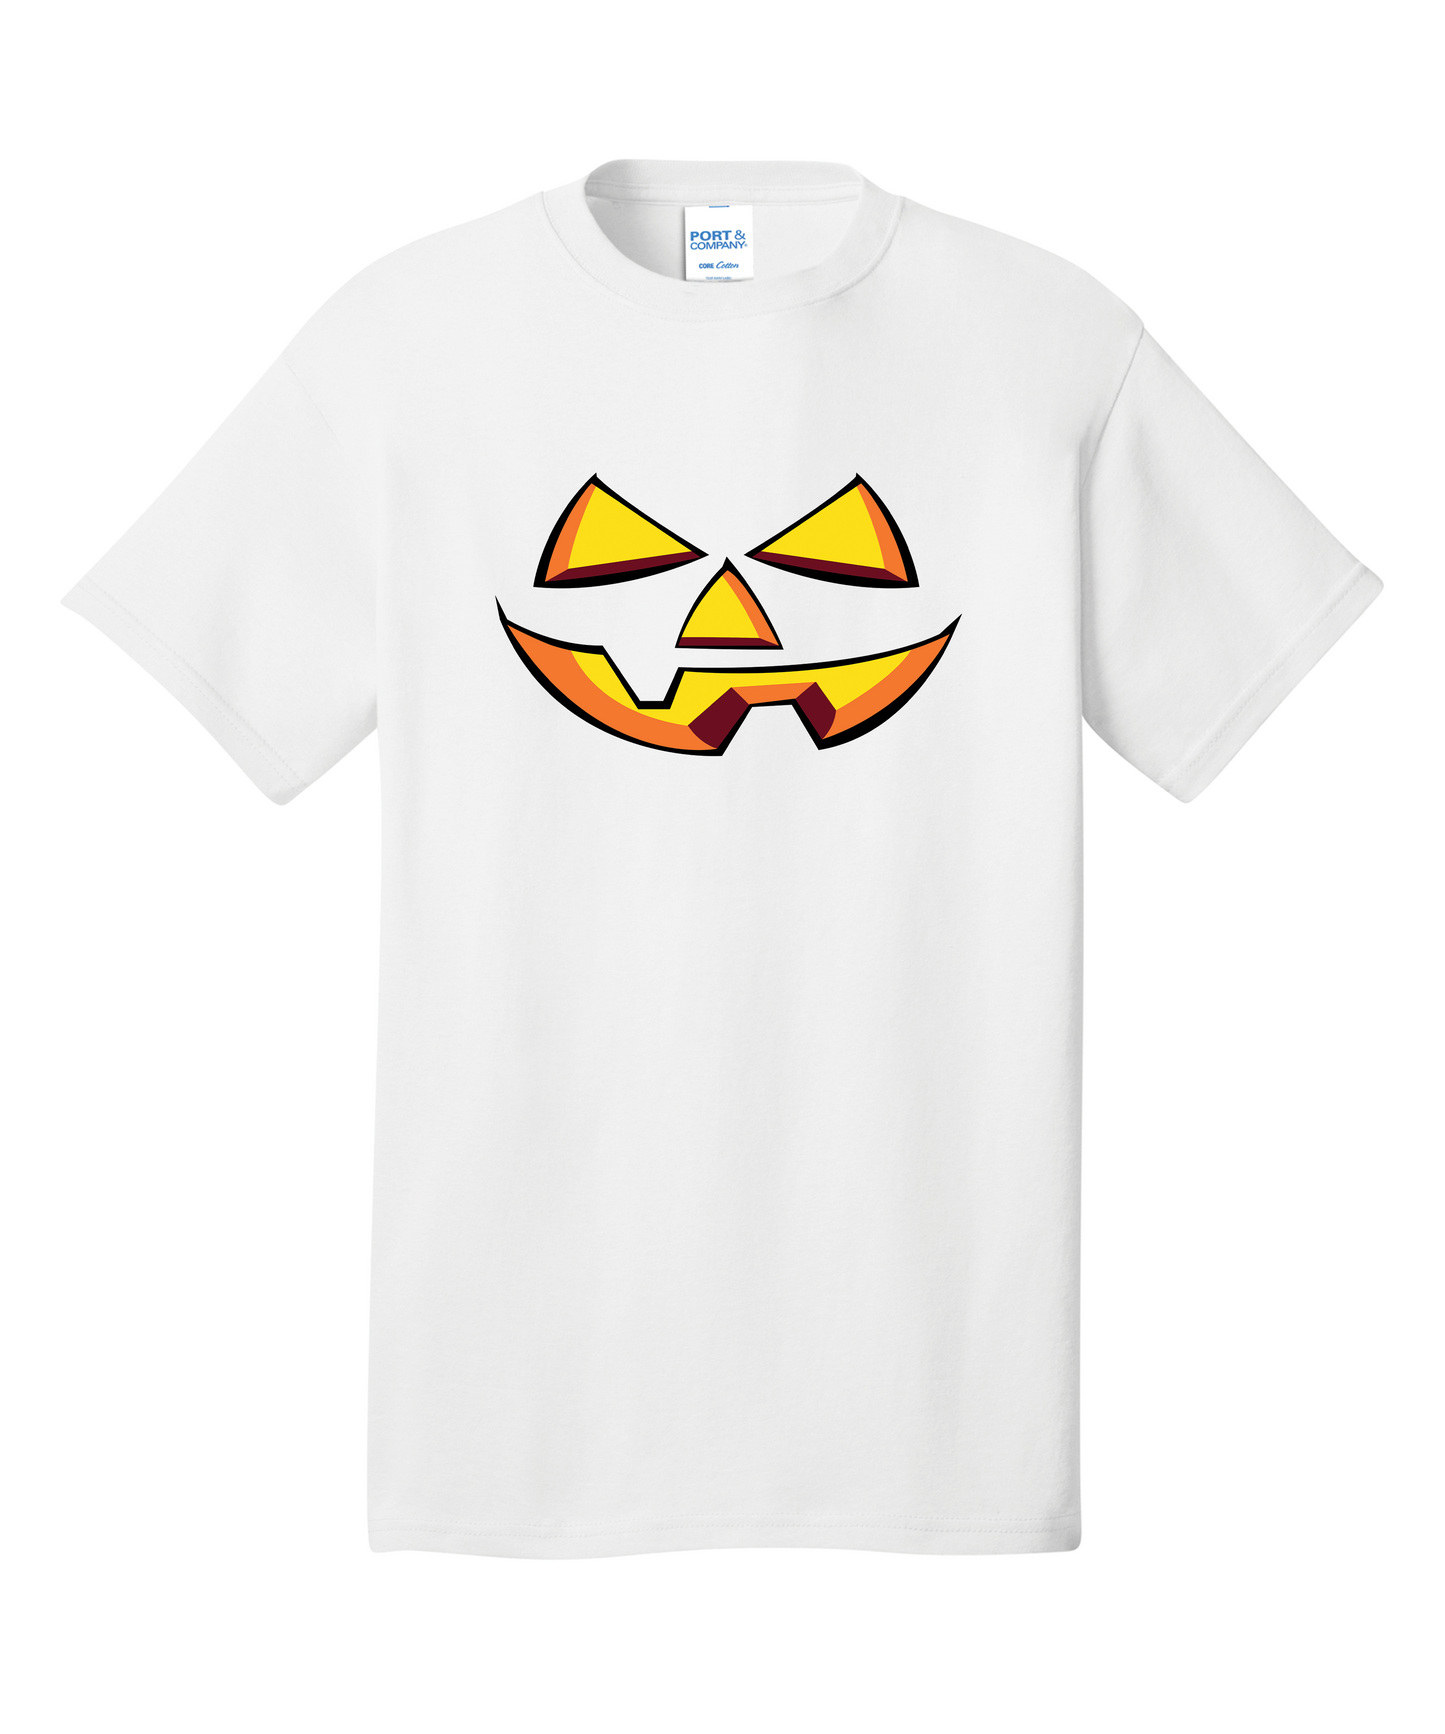 Pumpkin Face Short Sleeve Halloween T-Shirt: Embrace the Spooky Spirit